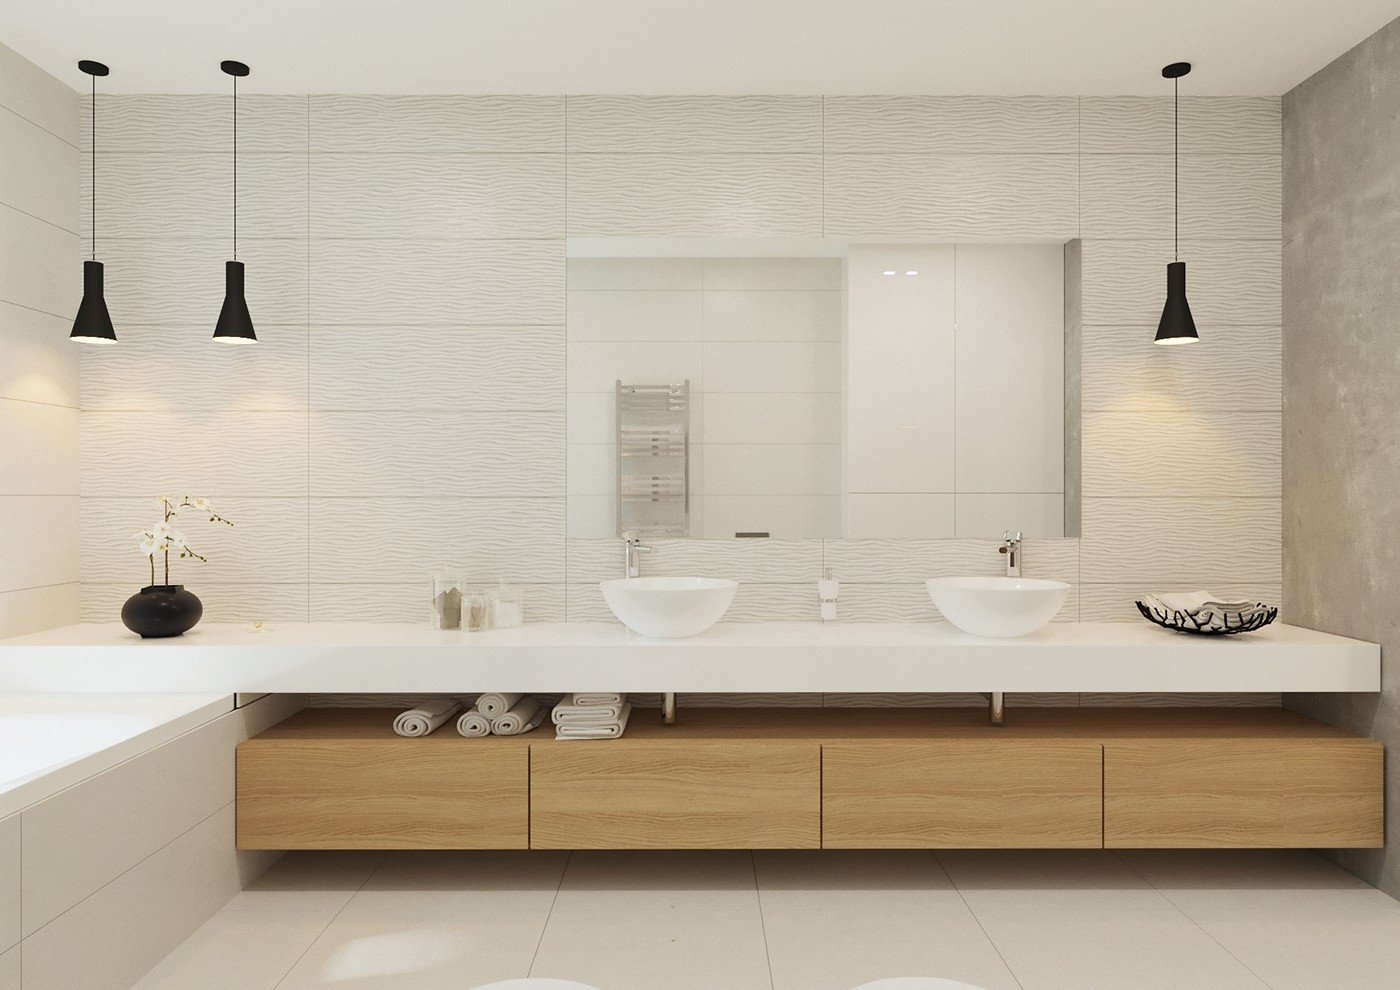 Interior design livingroom bedroom kitchen design designinterior marble interior